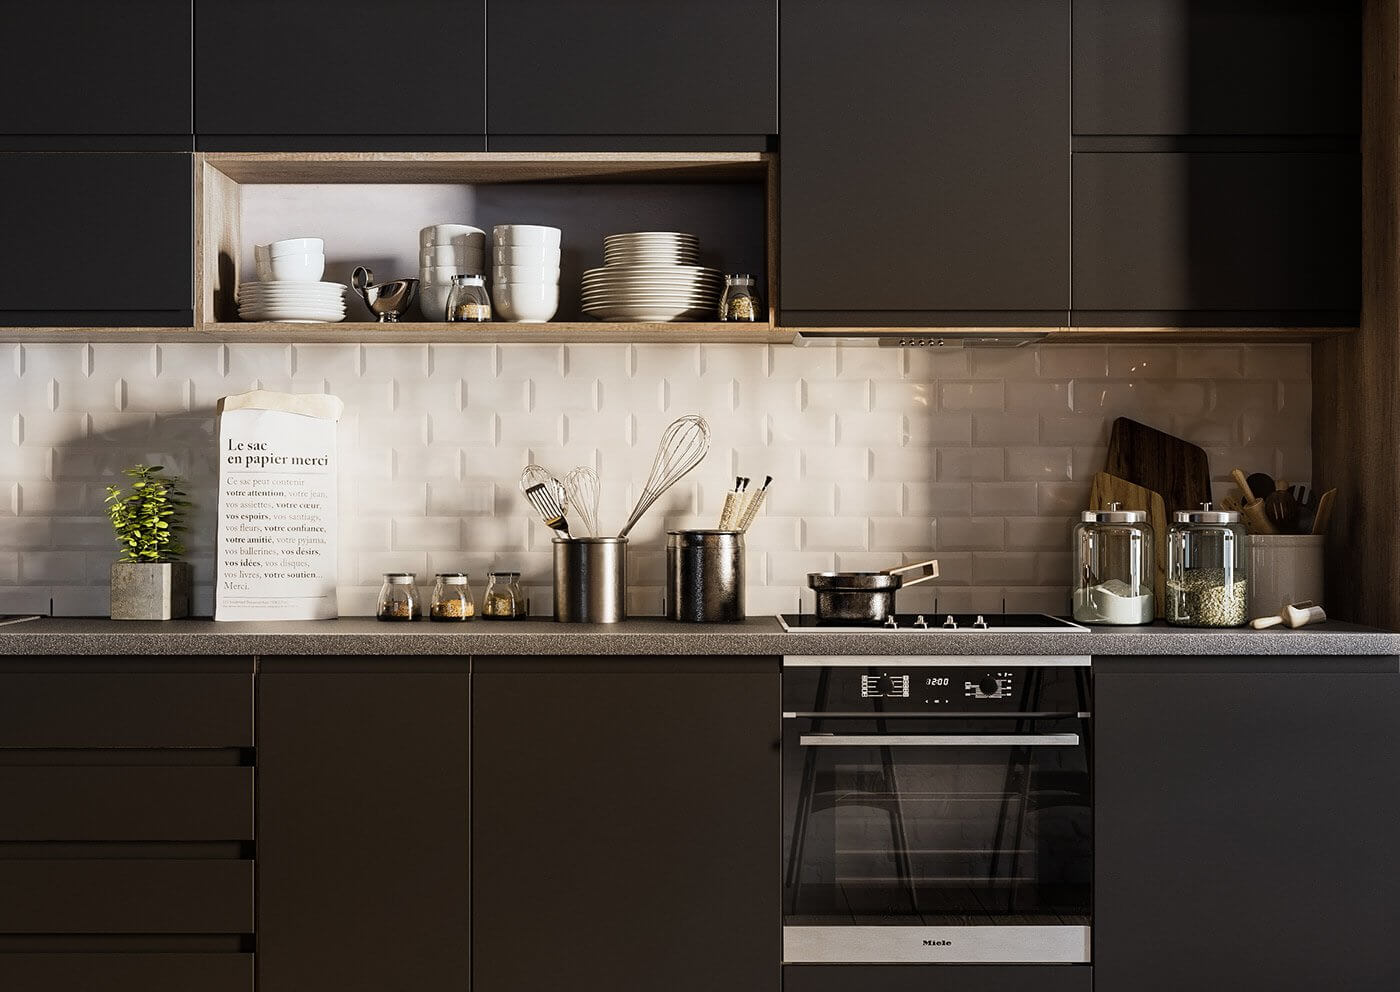 Minimal Interior design kitchen black design kitchen appliances